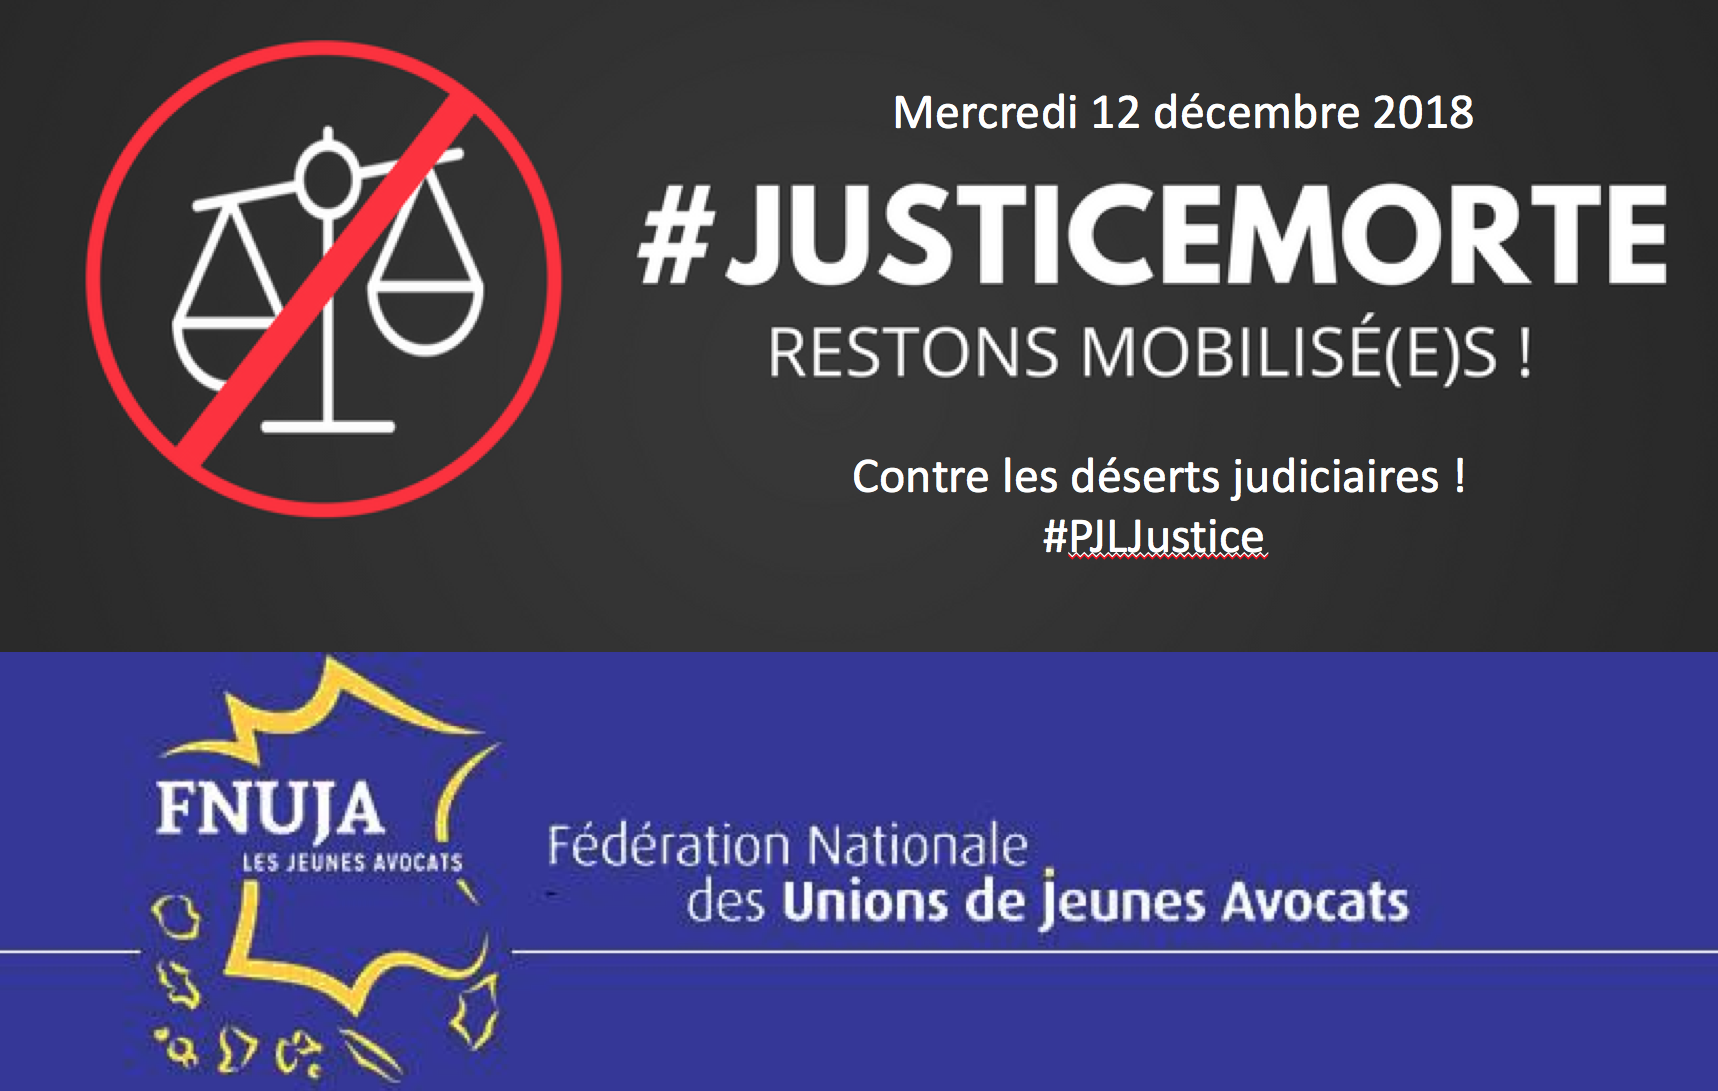 Mobilisation contre le PLJ Justice - Nouvelle journée "Justice morte" le 12 décembre !